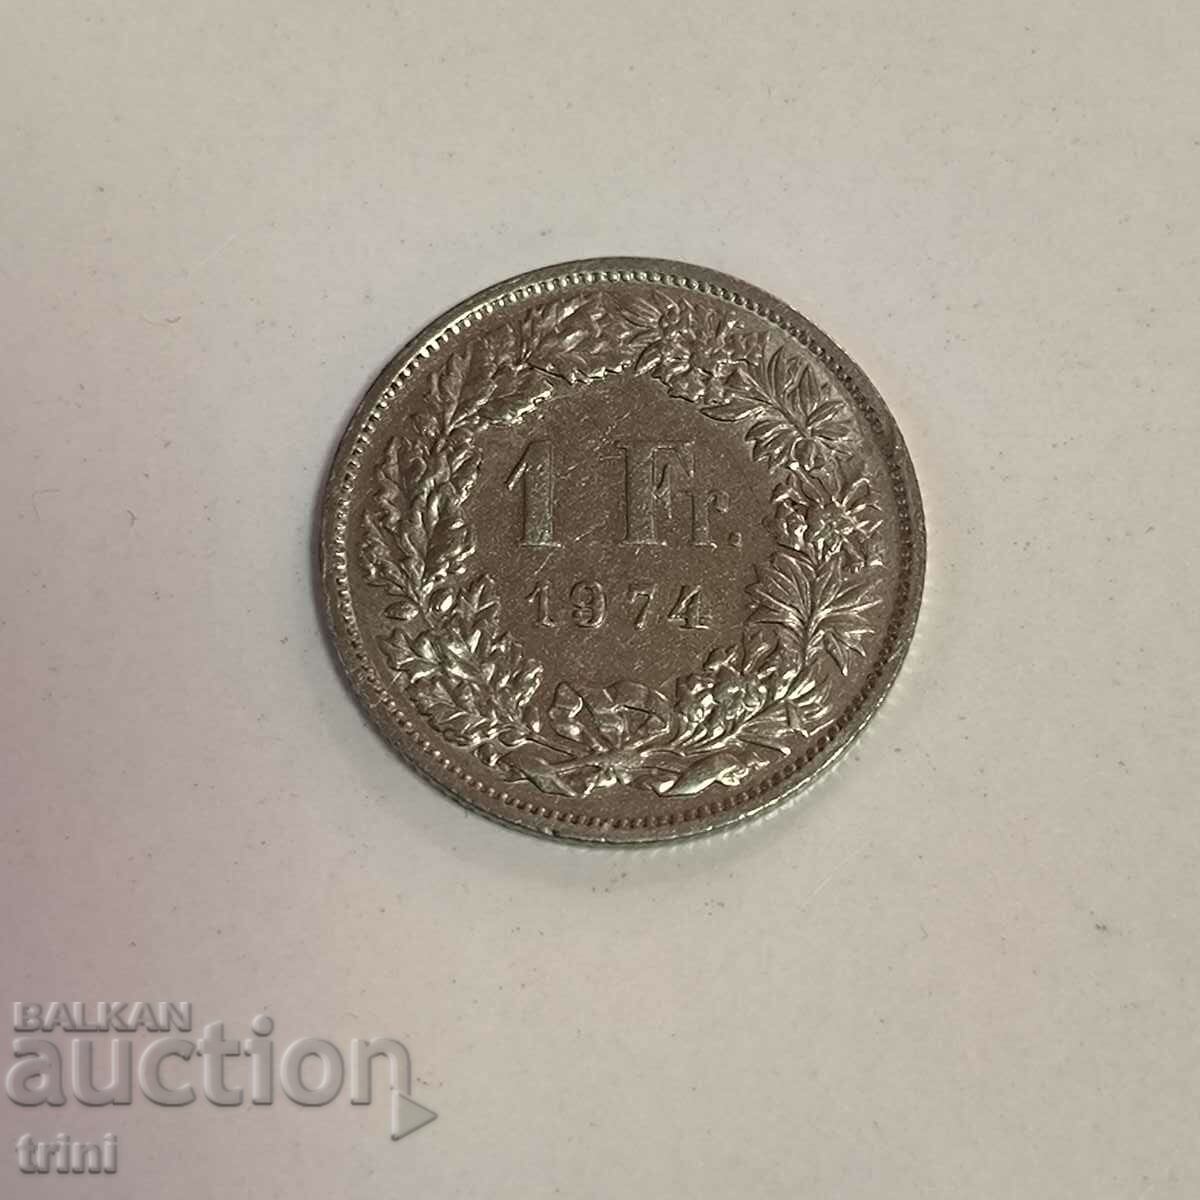 Switzerland 1 franc 1974 year g39